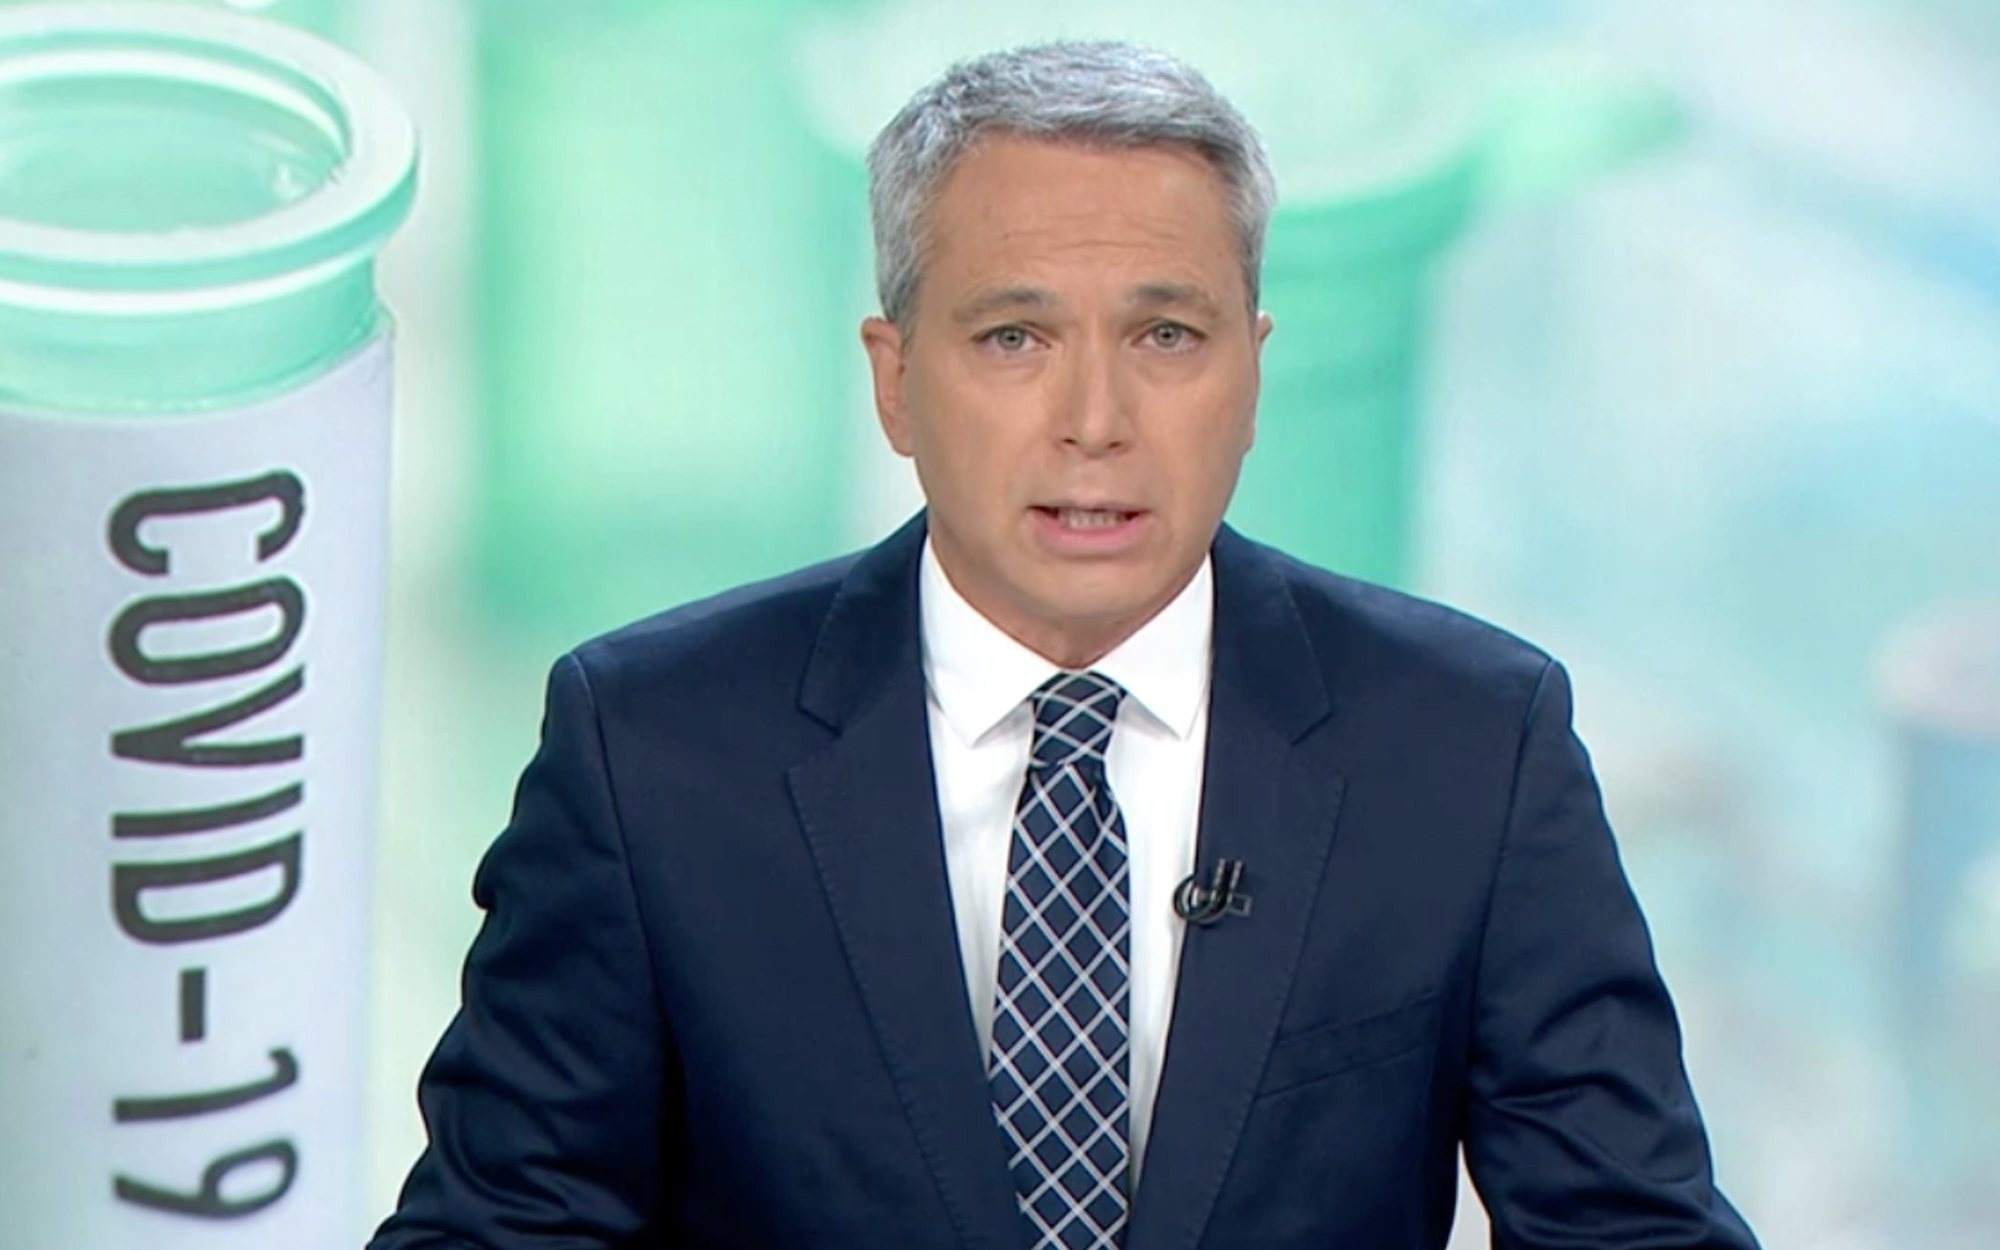 Vicente Vallés vuelve a 'Antena 3 noticias' con zascas a Pedro Sánchez y Podemos